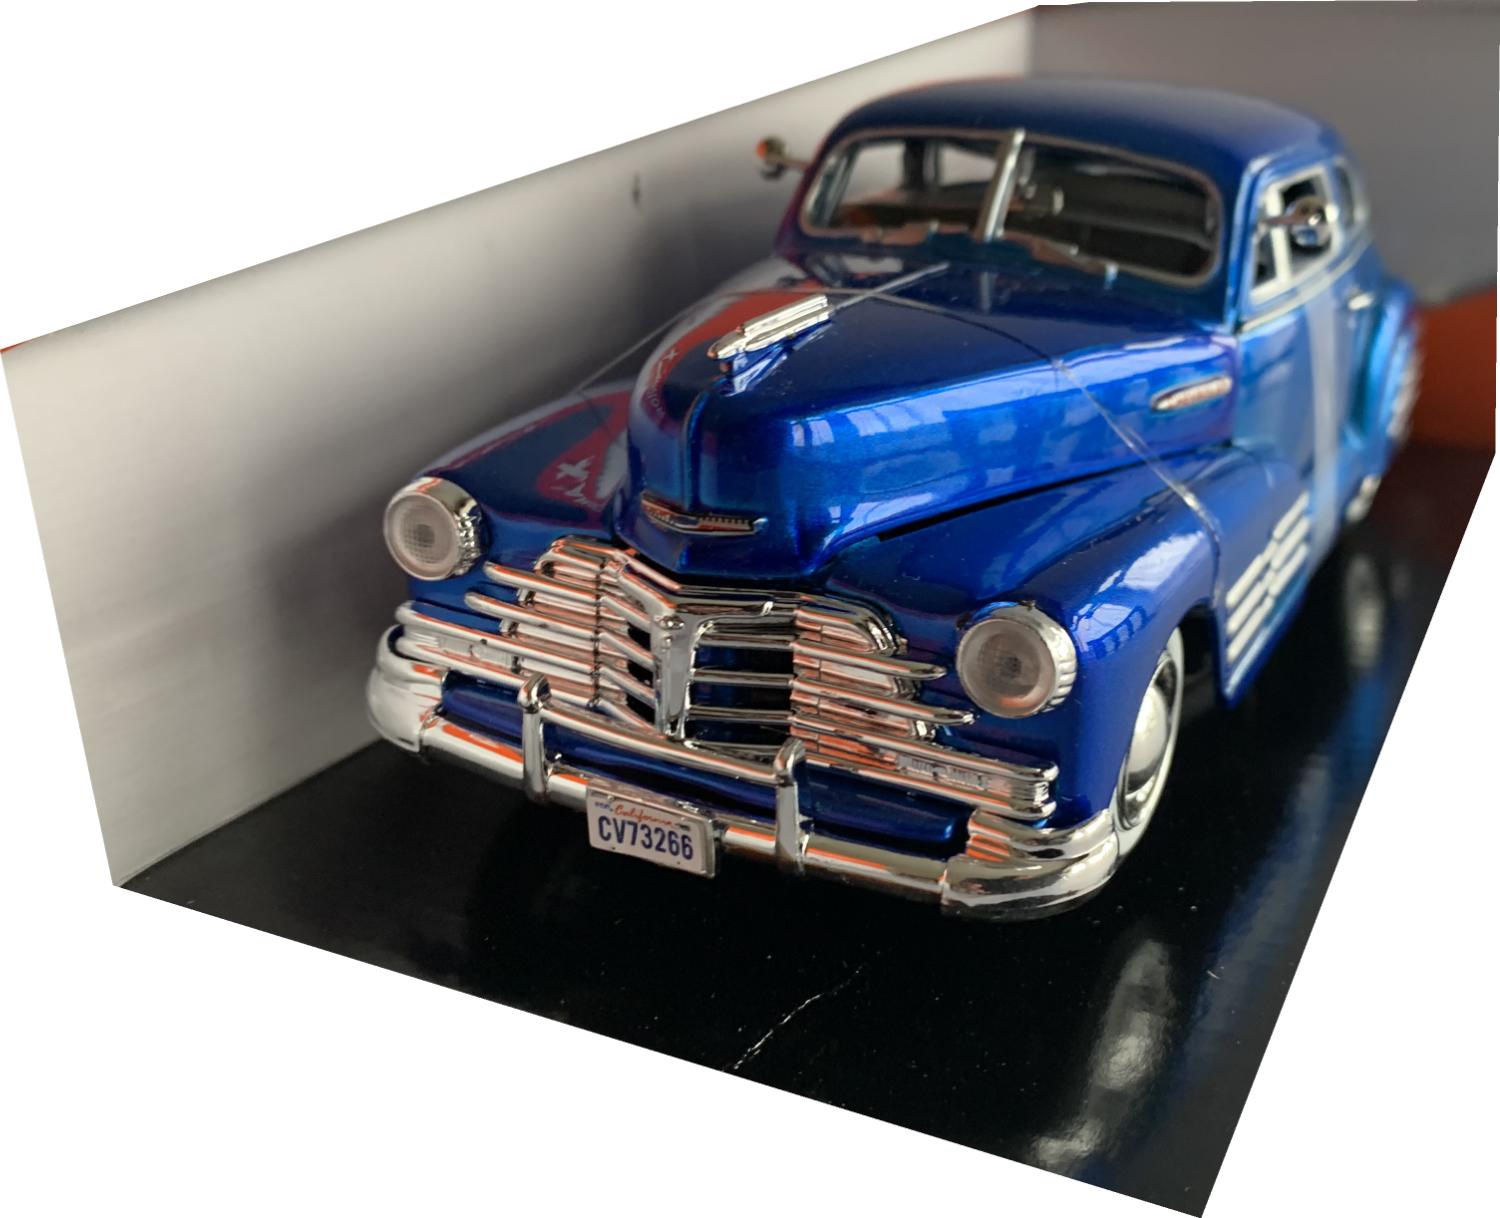 Chevrolet Aerosedan Fleetline 1948 in metallic blue 1:24 scale model from Motormax